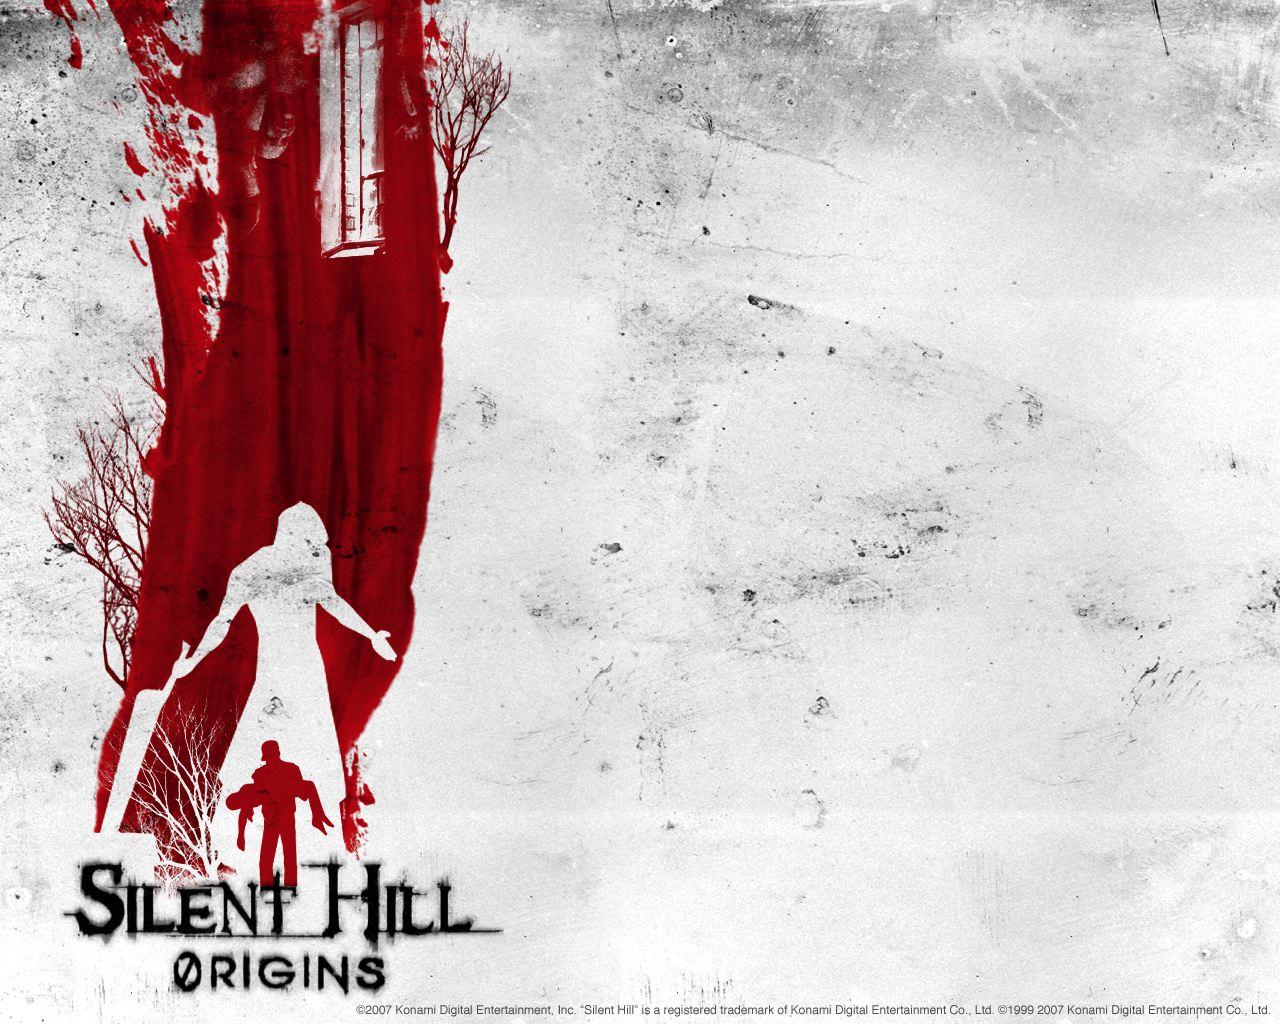 Silent Hill Wallpaper